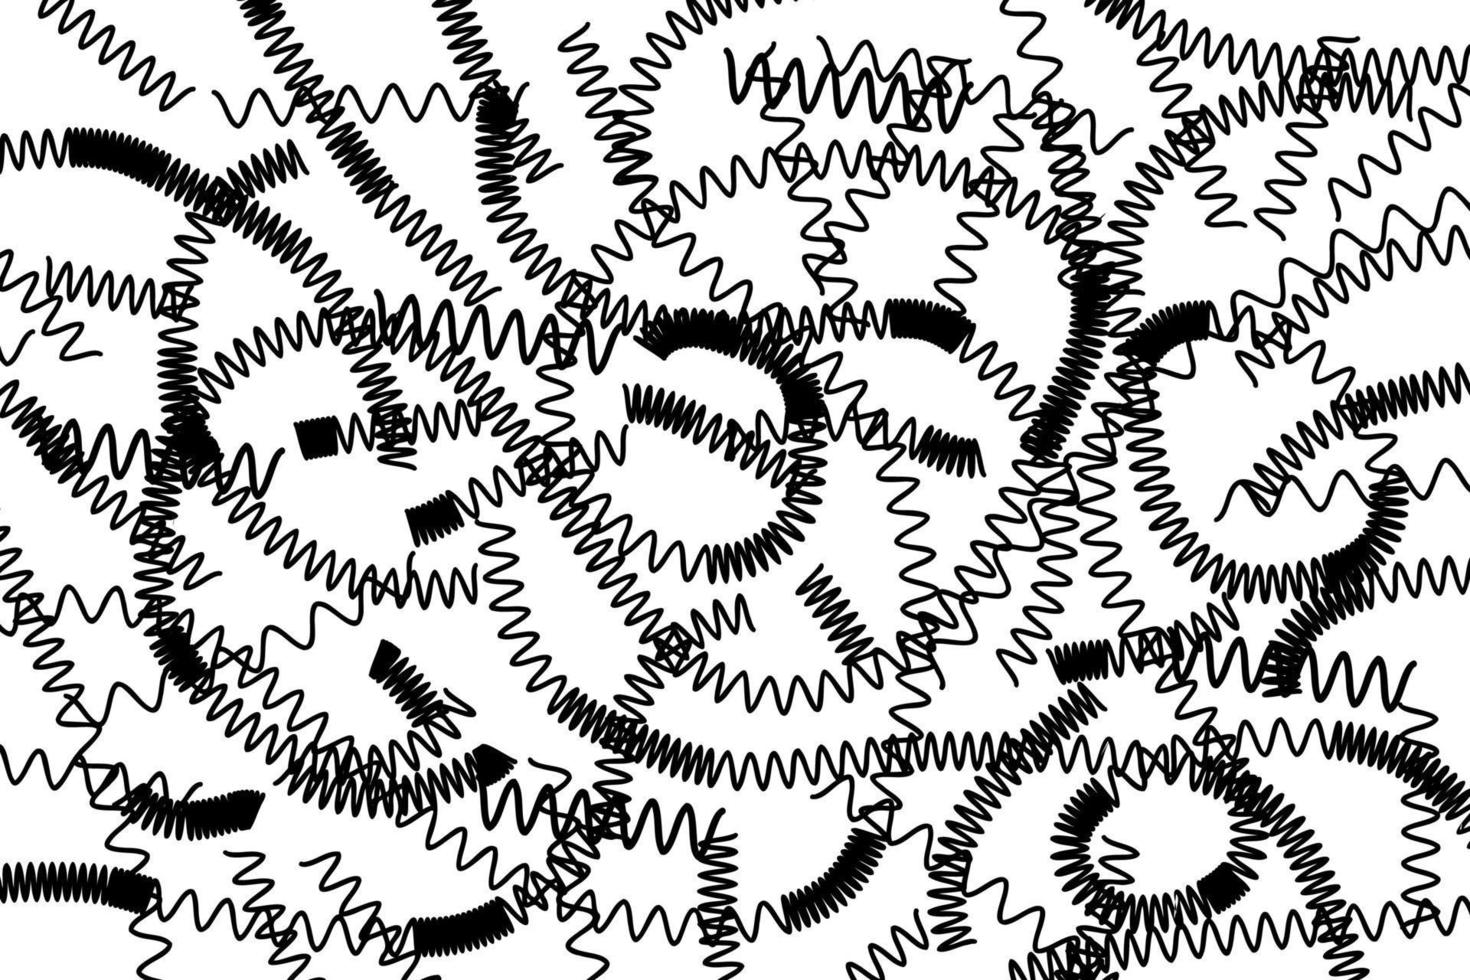 schwarze und weiße Federn, abstrakter Hintergrund mit Strudeln und Wirbeln, schwarze Zickzackfedern auf weißem Hintergrund. vektor